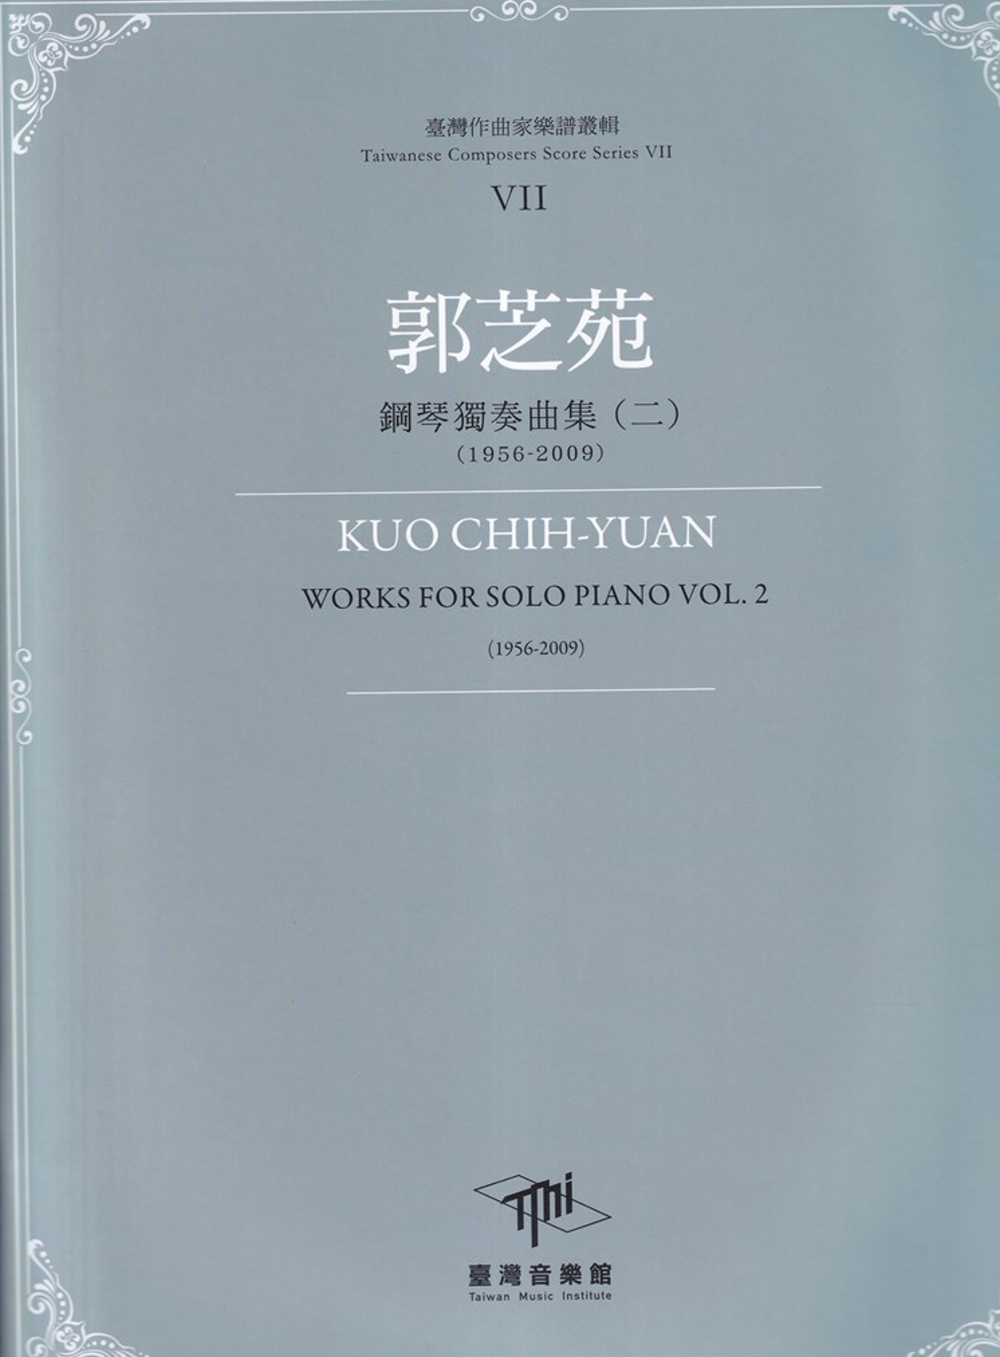 臺灣作曲家樂譜叢輯VII：郭芝苑鋼琴獨奏曲(二)(1956-2009)